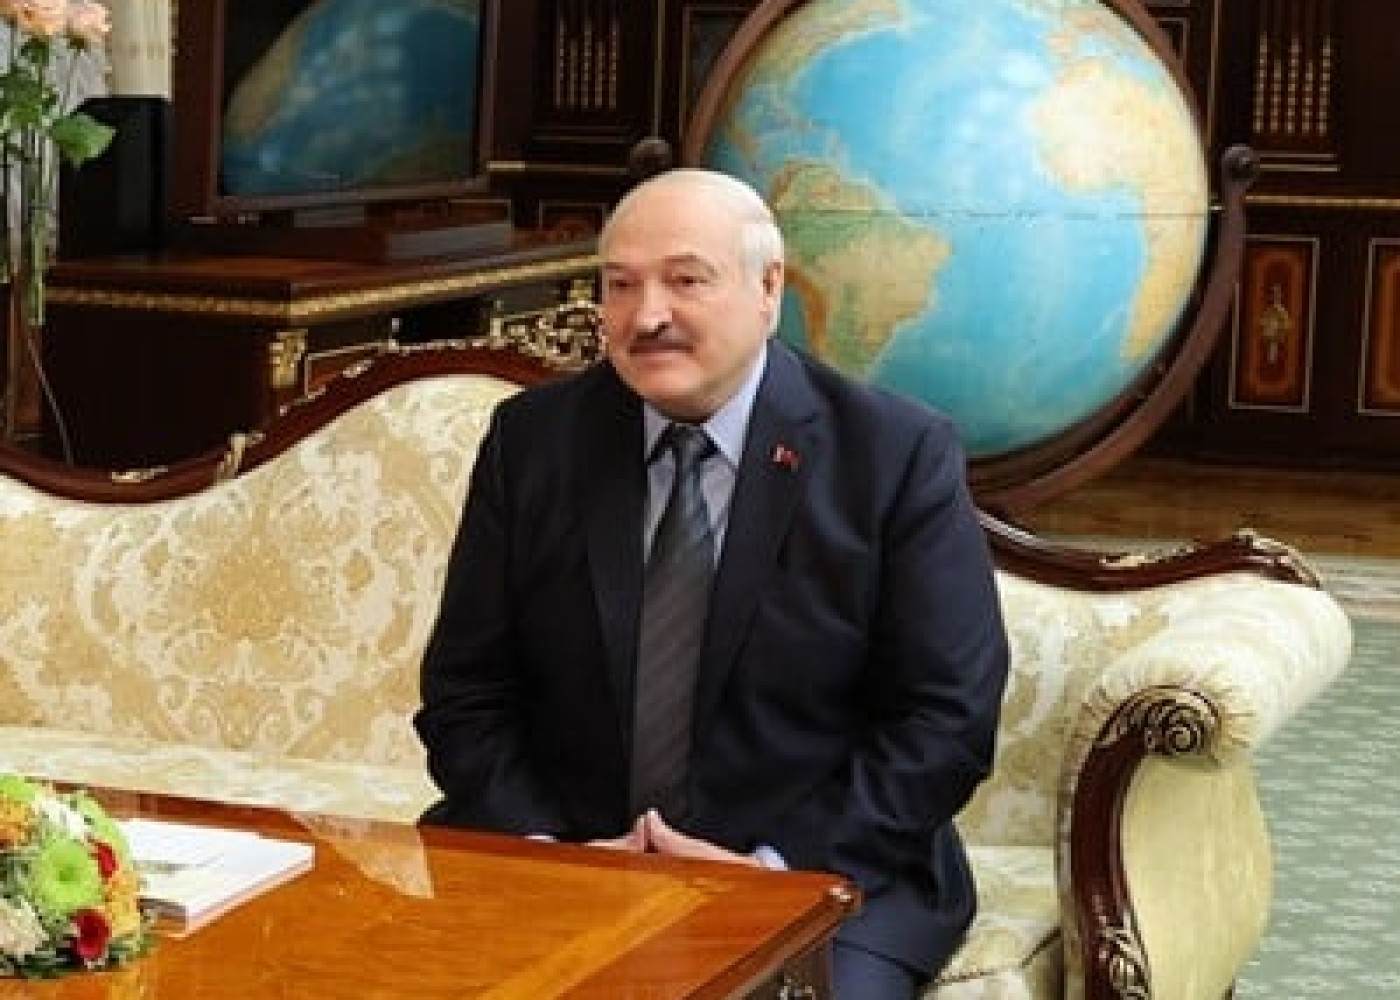 Monqolustanın eks-prezidentindən Lukaşenkonun həbsinəÇAĞIRIŞ